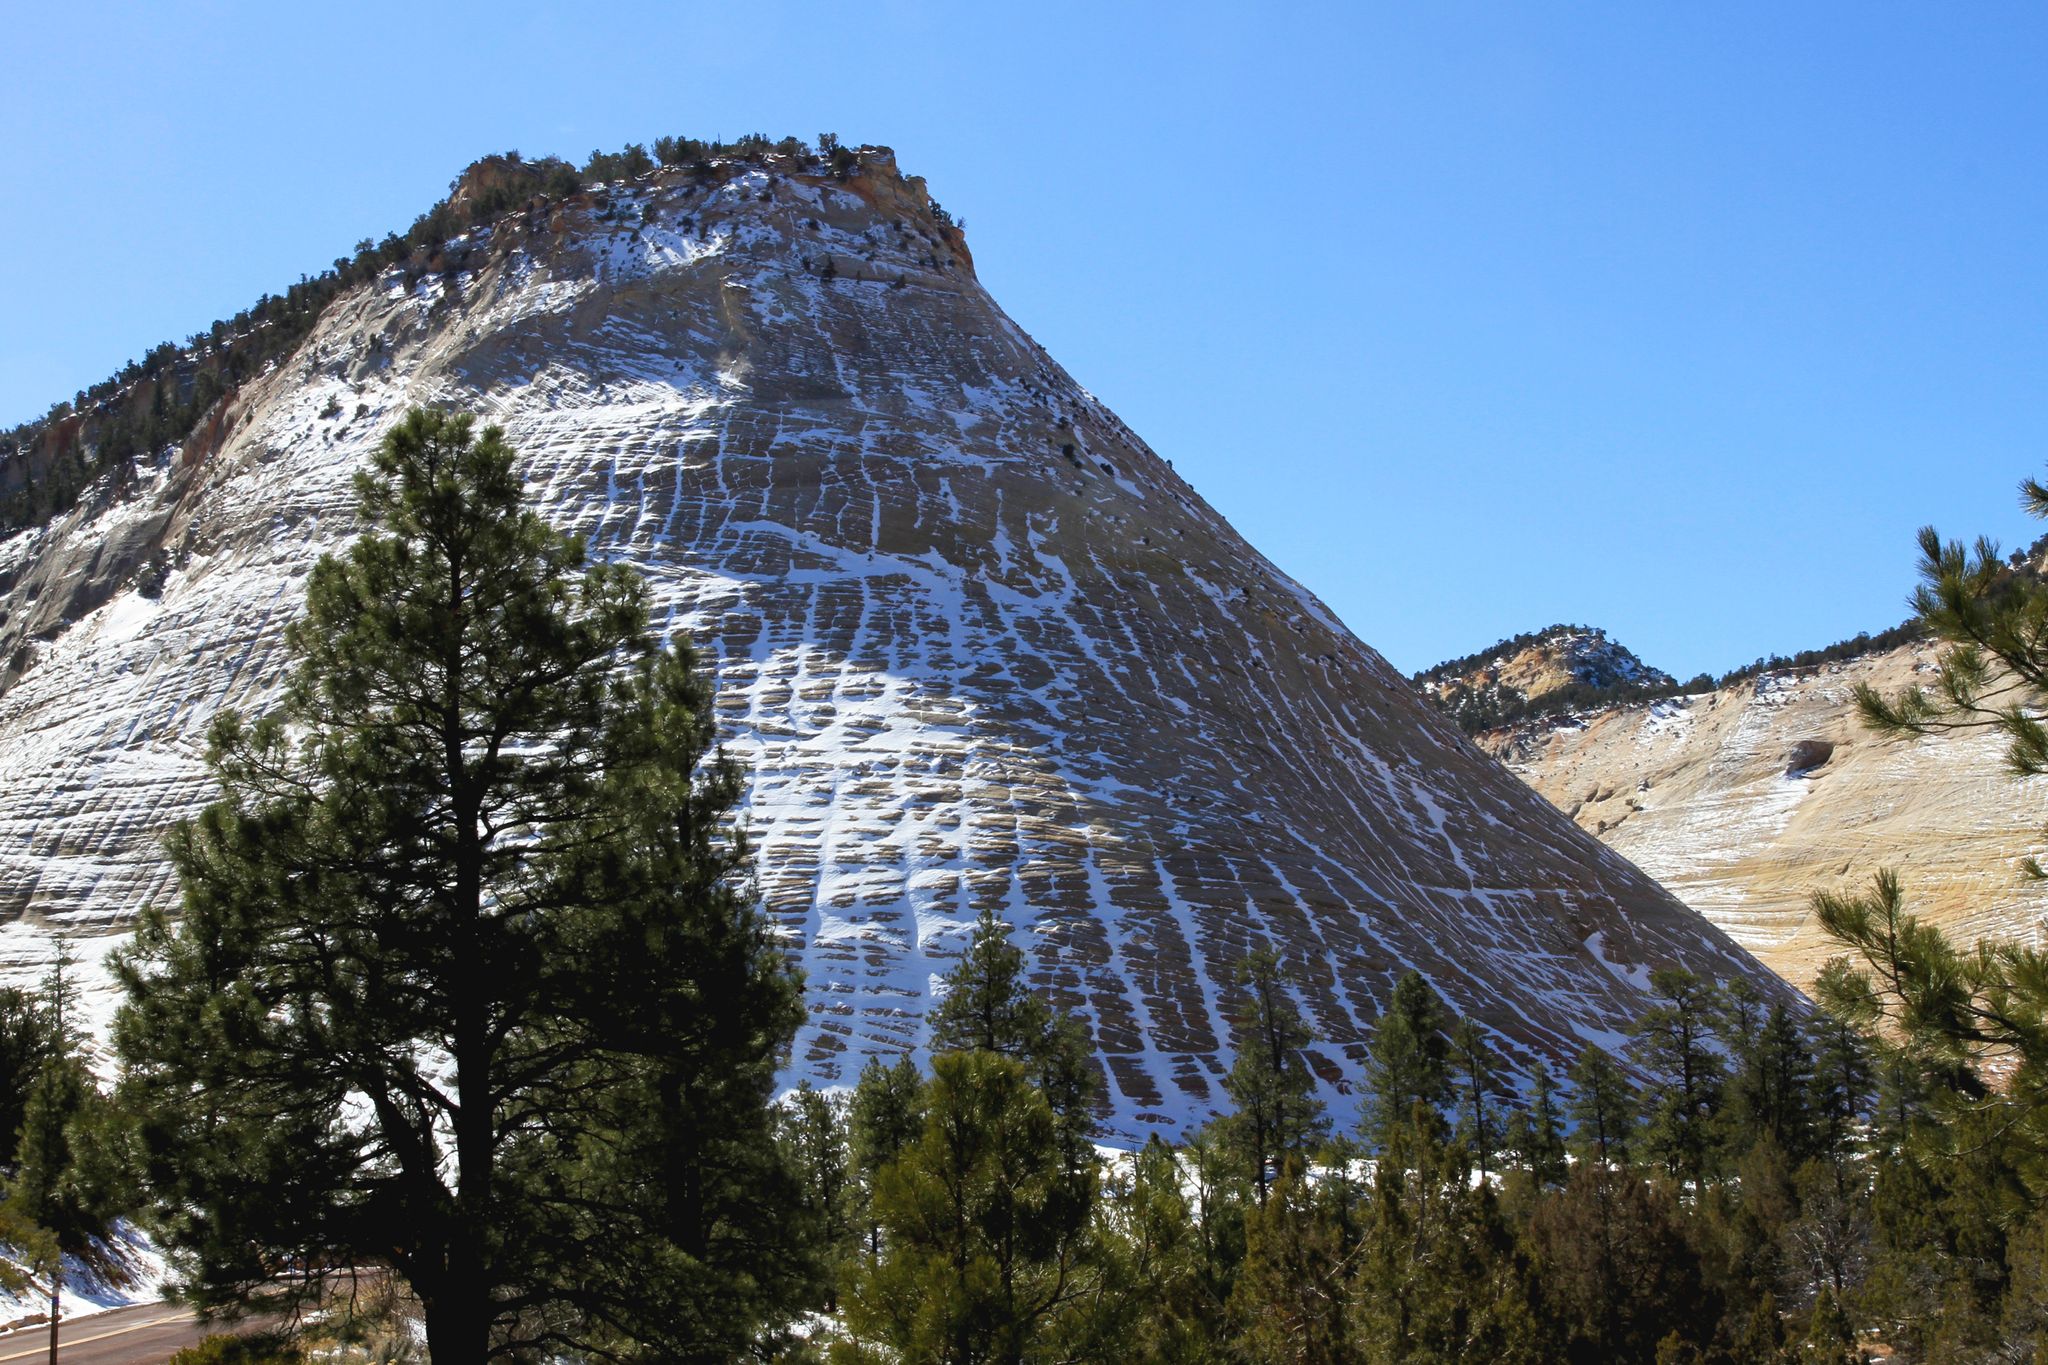 ARCHIVO - Al Parque Nacional Zion (foto), en Utah, se podrá acceder de forma gratuita en cinco fechas de 2022, al igual que a todos los demás parques nacionales en Estados Unidos. Foto: Michael Juhran/dpa